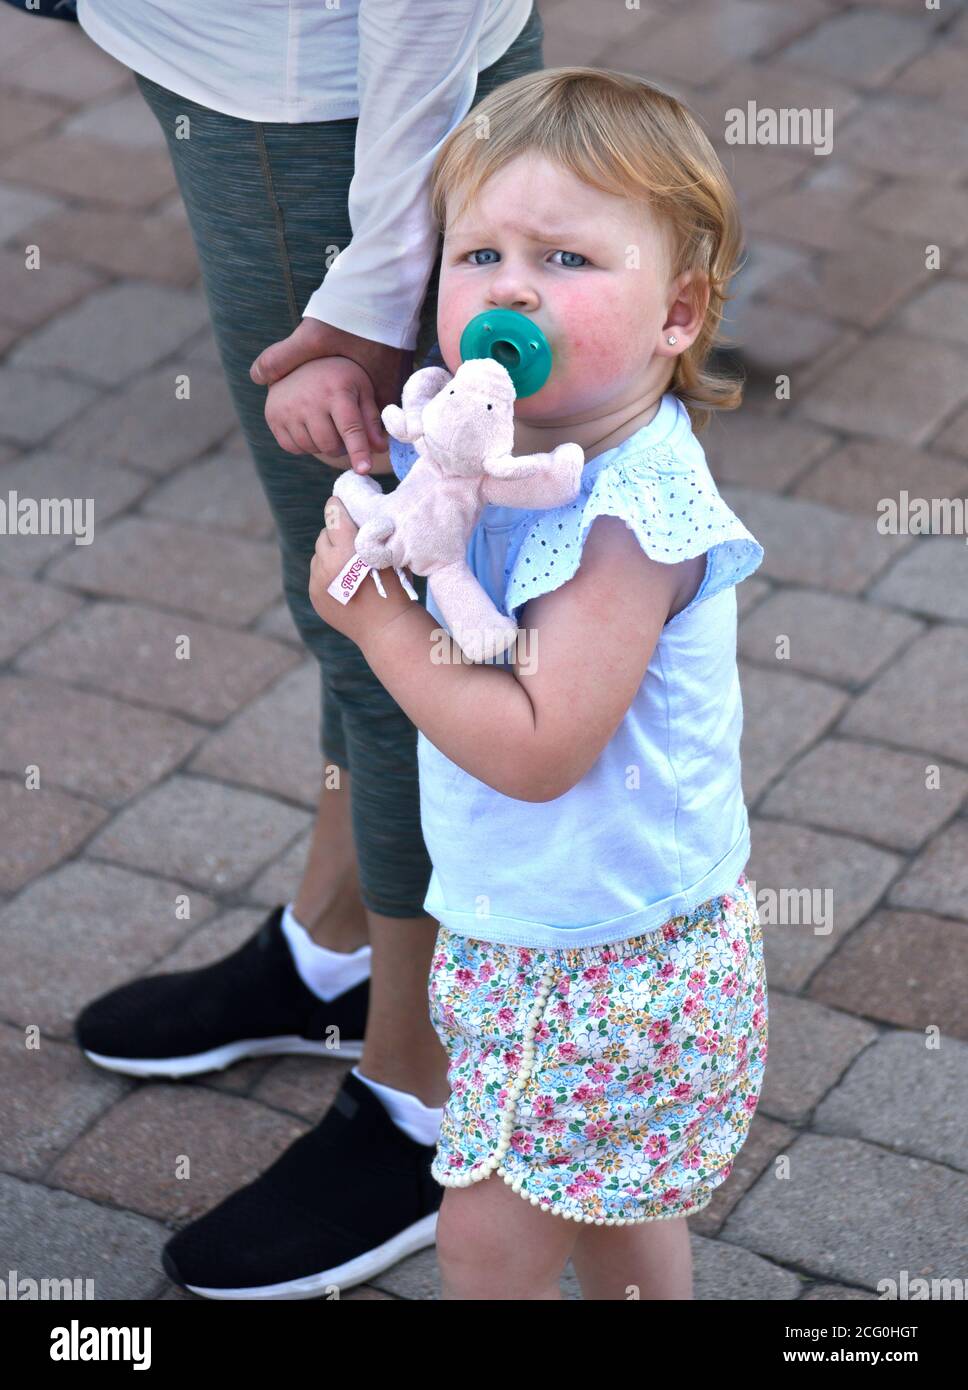 Una giovane ragazza tiene la mano della madre e si aggrava ad un giocattolo mentre la famiglia visita Santa Fe, New Mexico. Foto Stock